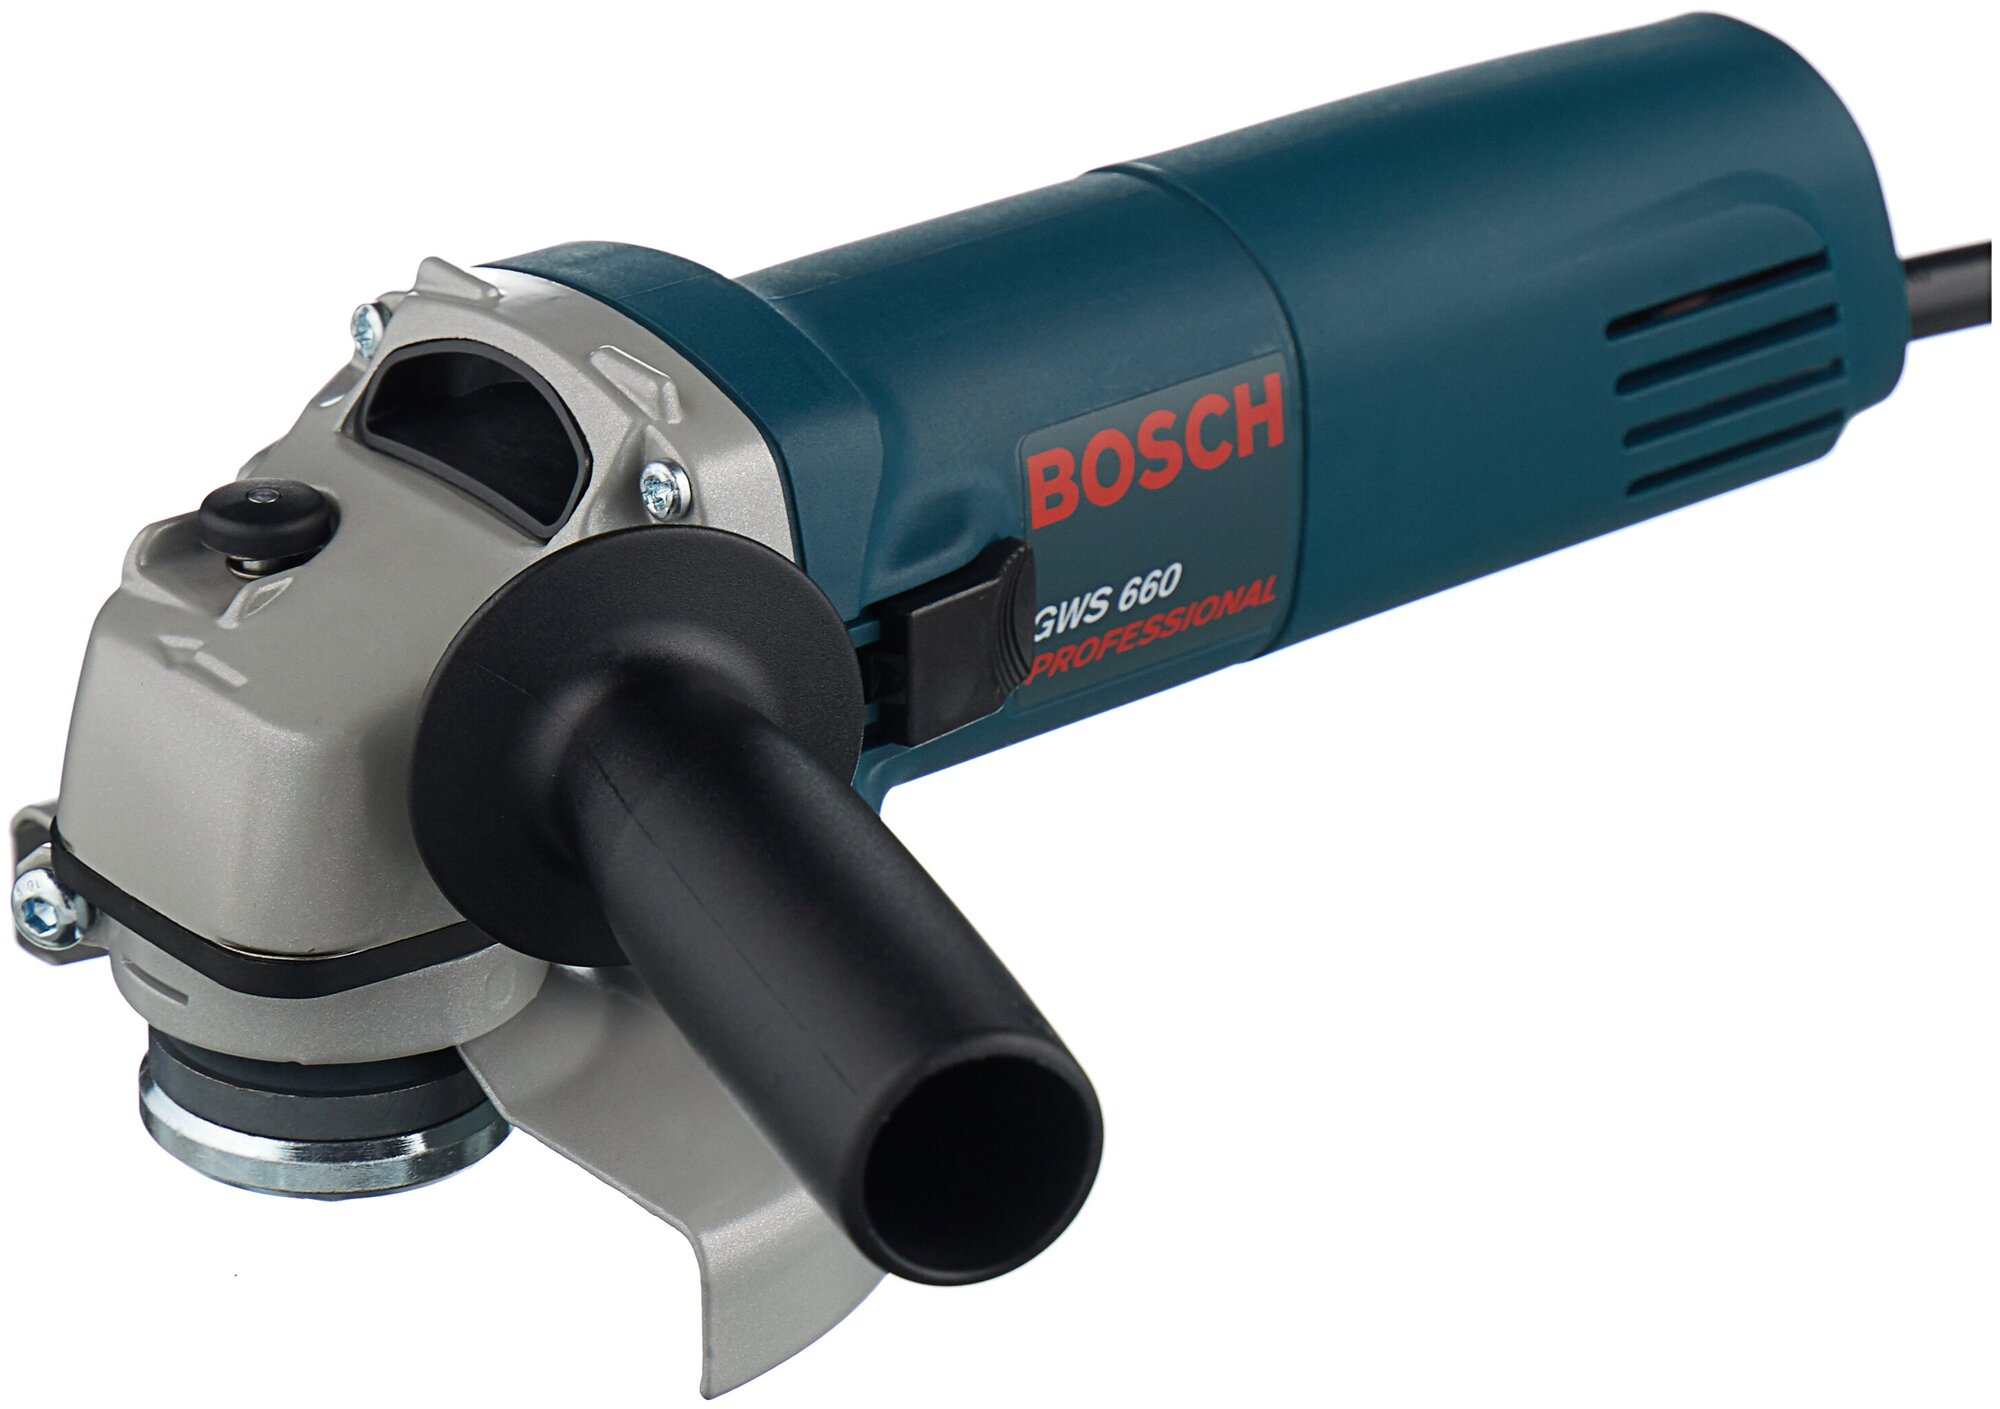   Bosch GWS 660 660 11000/ ..:M14 d=125